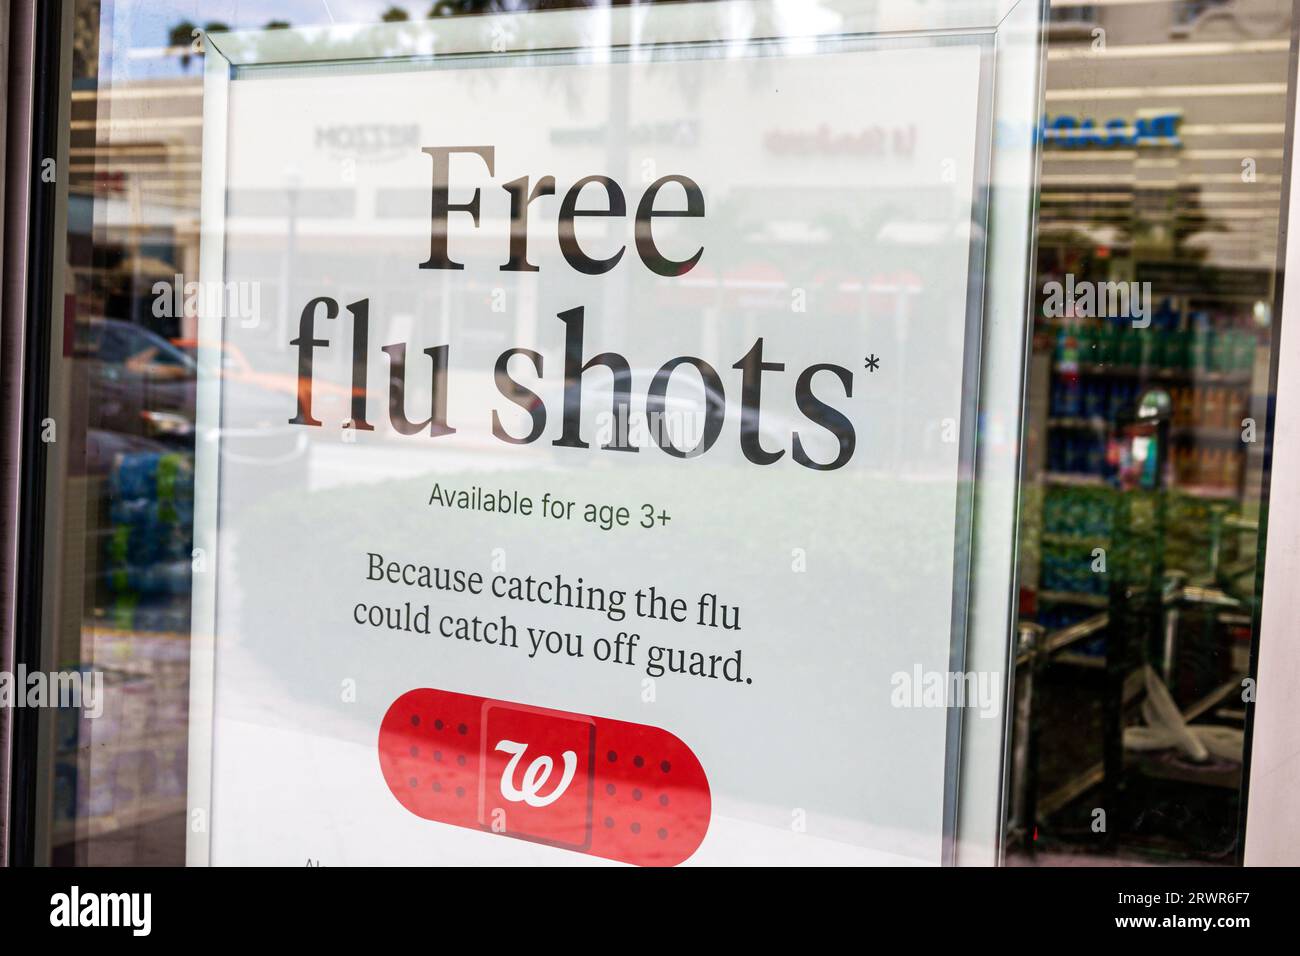 Miami Beach Floride, pharmacie Walgreens, intérieur intérieur intérieur à l'intérieur, panneau d'avis, vaccination gratuite contre la grippe promotion offerte, panneau d'information, promotion Banque D'Images